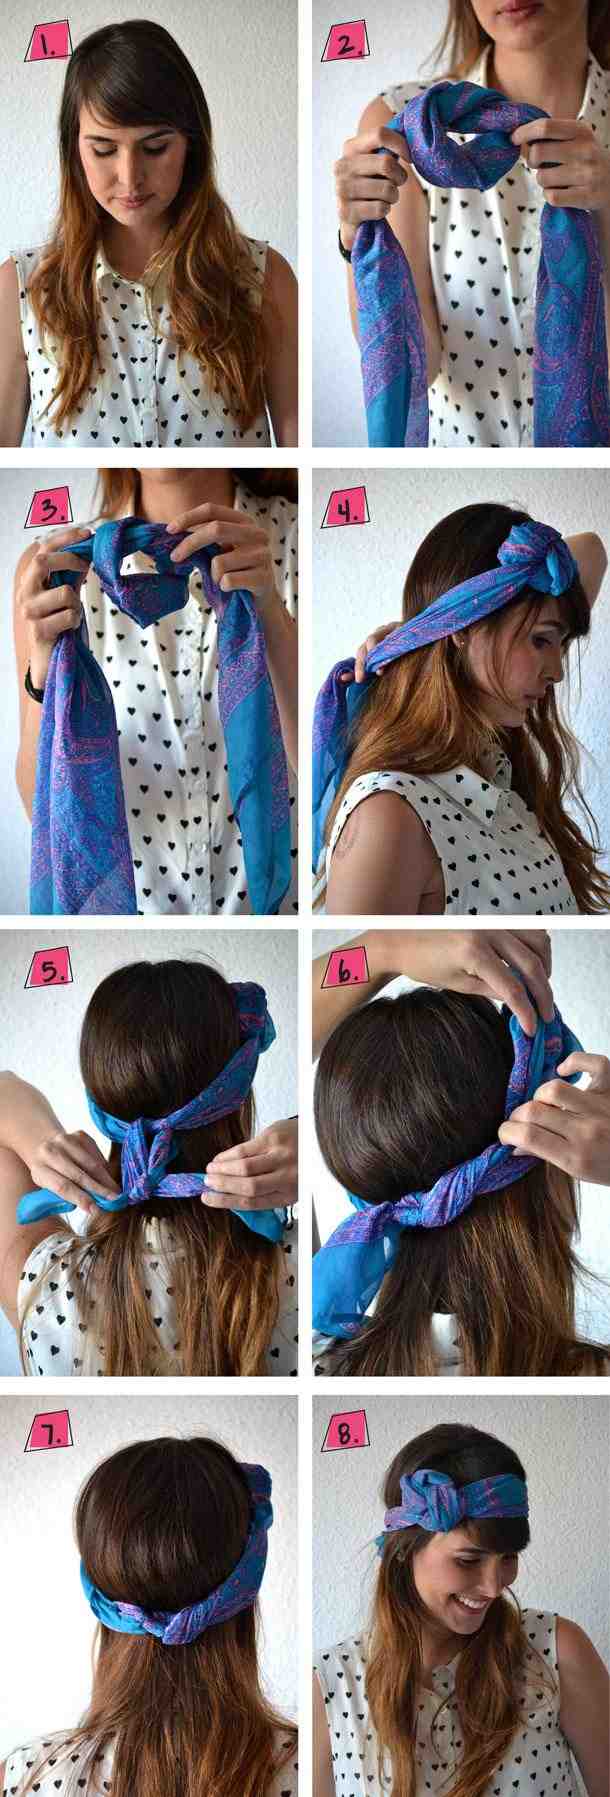 bandana-tie-instruktioner-gör-öppna-hår-knut